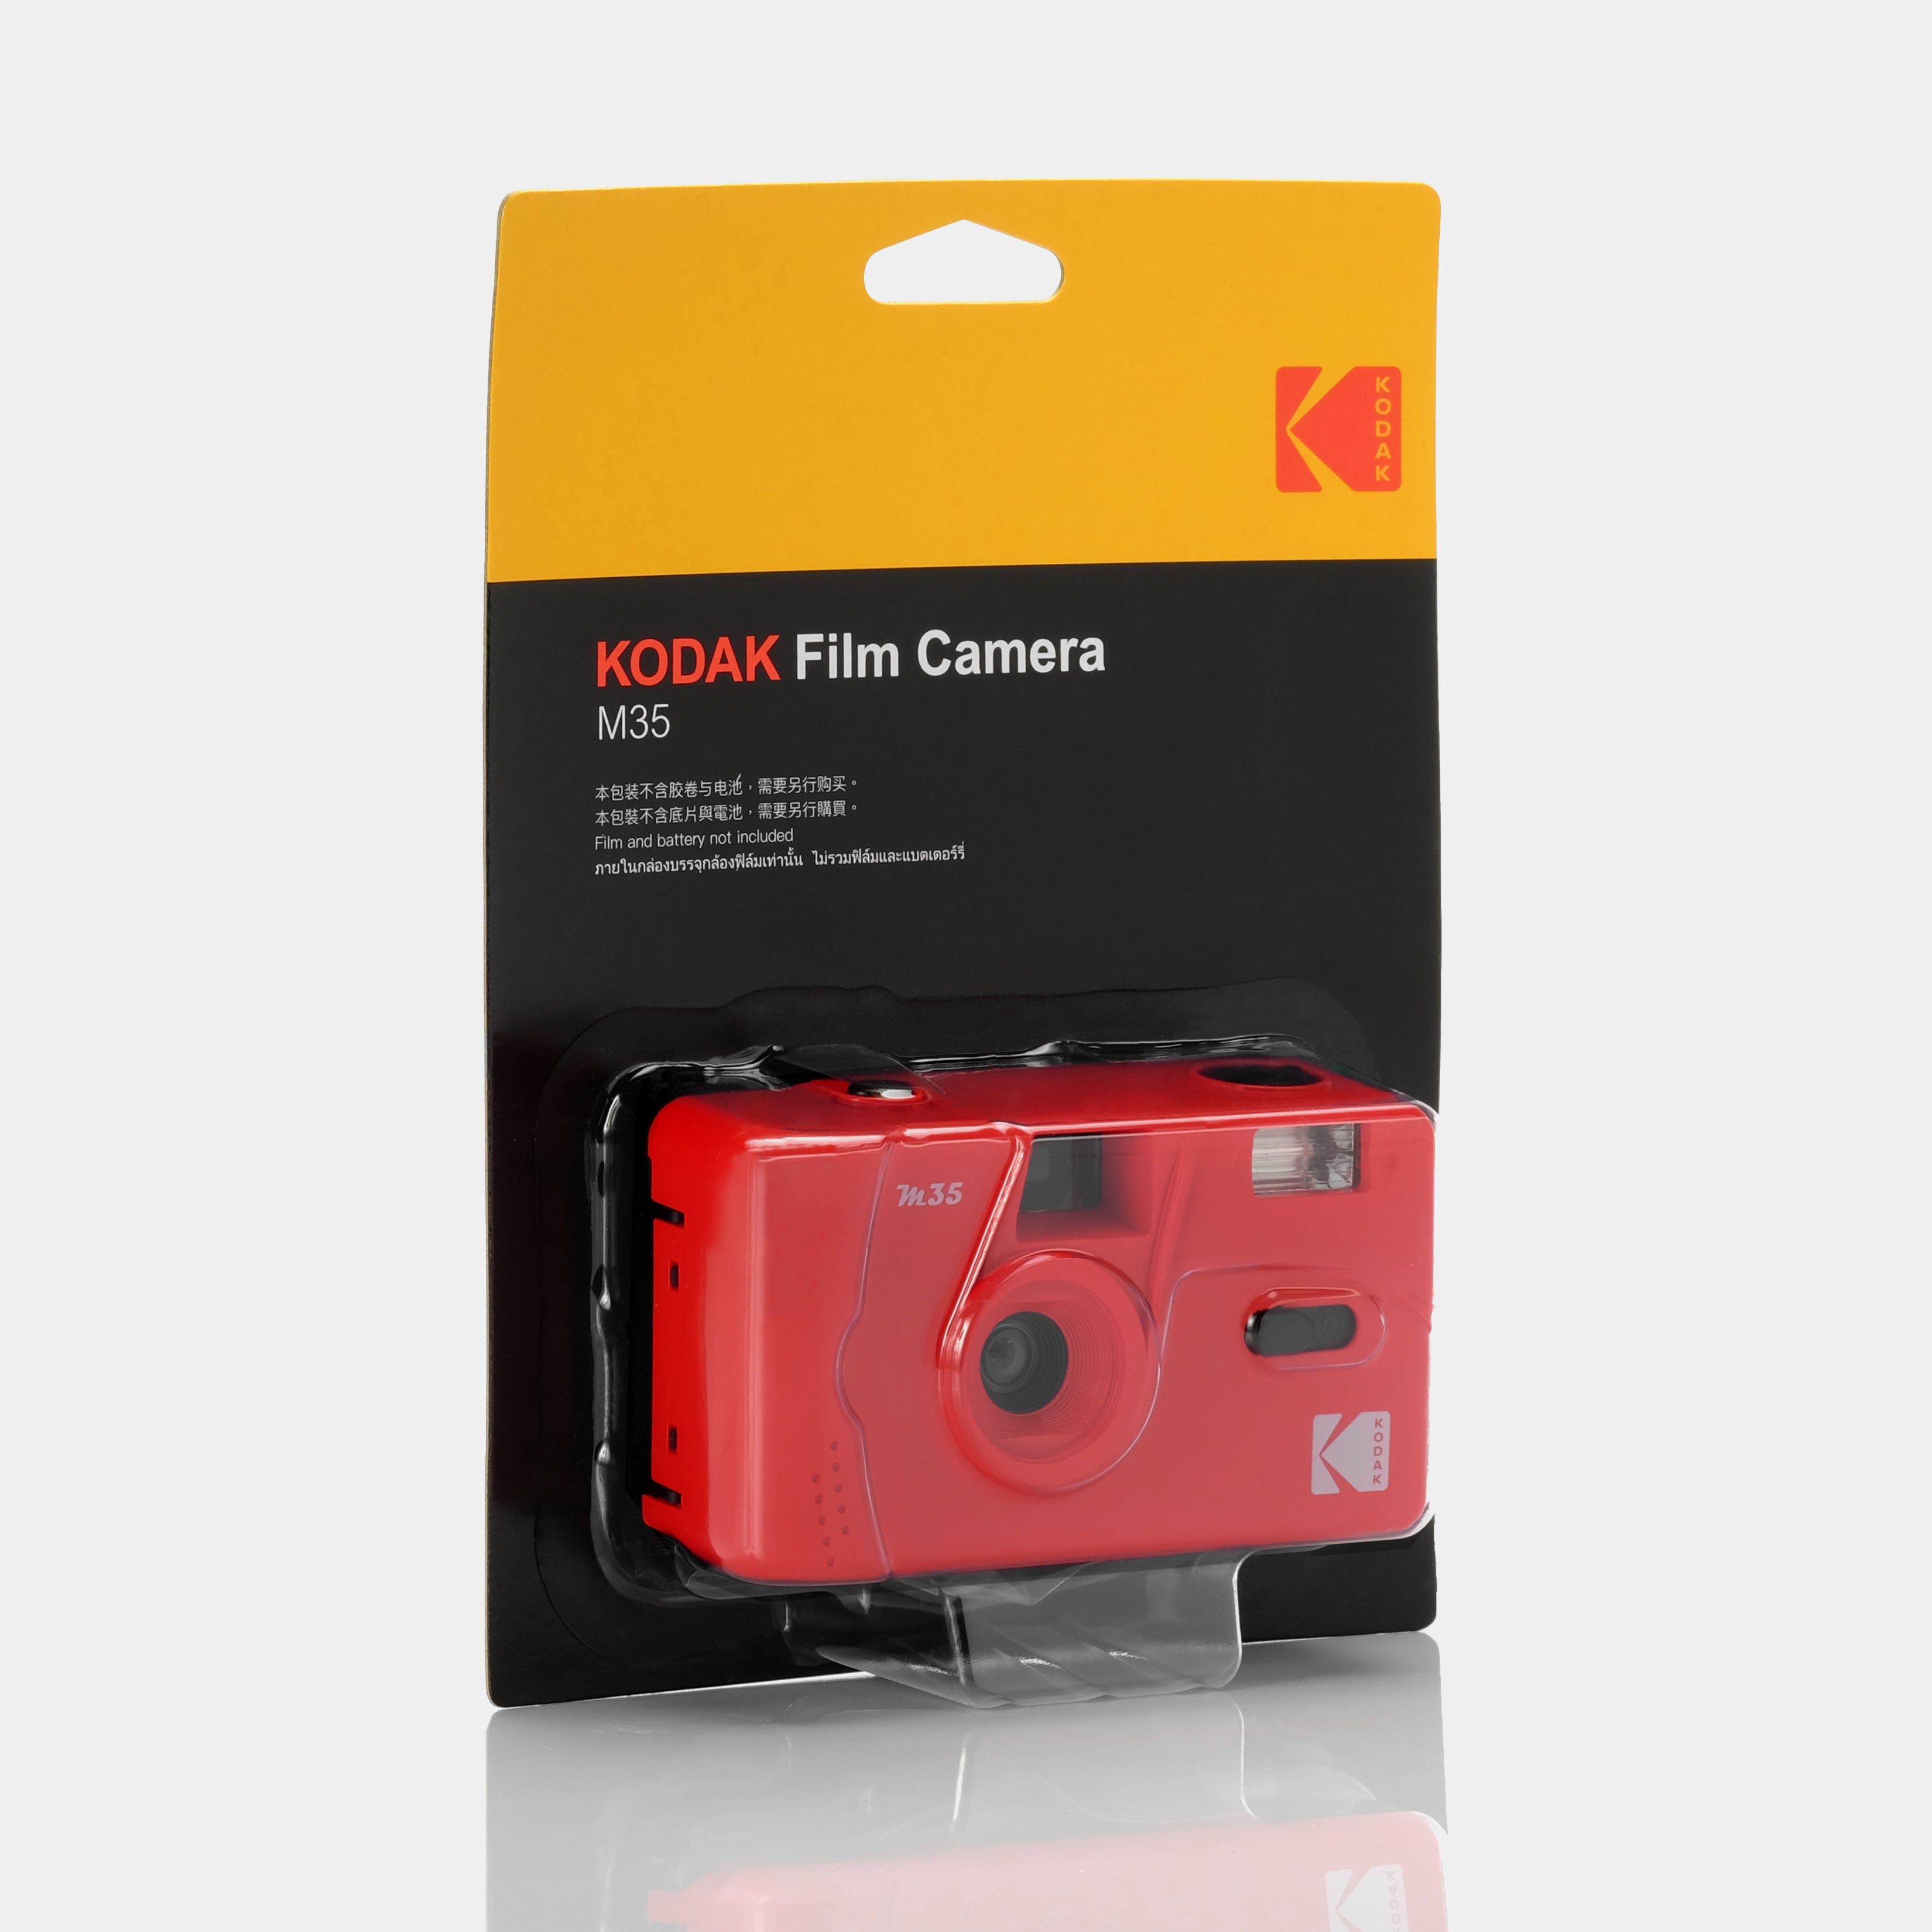 Kodak M38 Cámara Analógica 35mm Roja